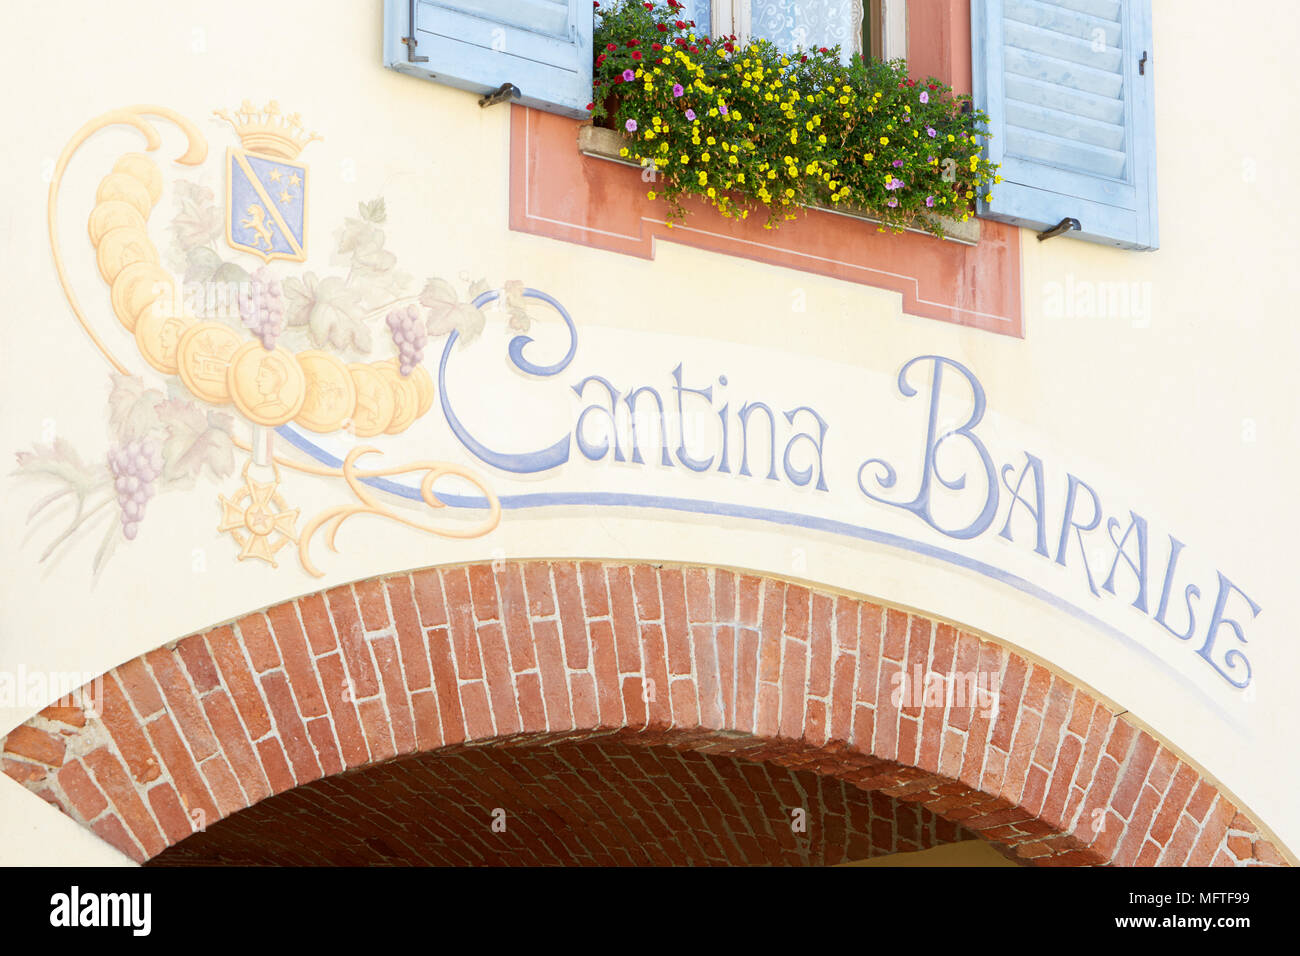 Il logo della cantina Cantina Barale dipinta sulla parete antica con mattoni rossi arco in una soleggiata giornata estiva in Piemonte, Italia Foto Stock